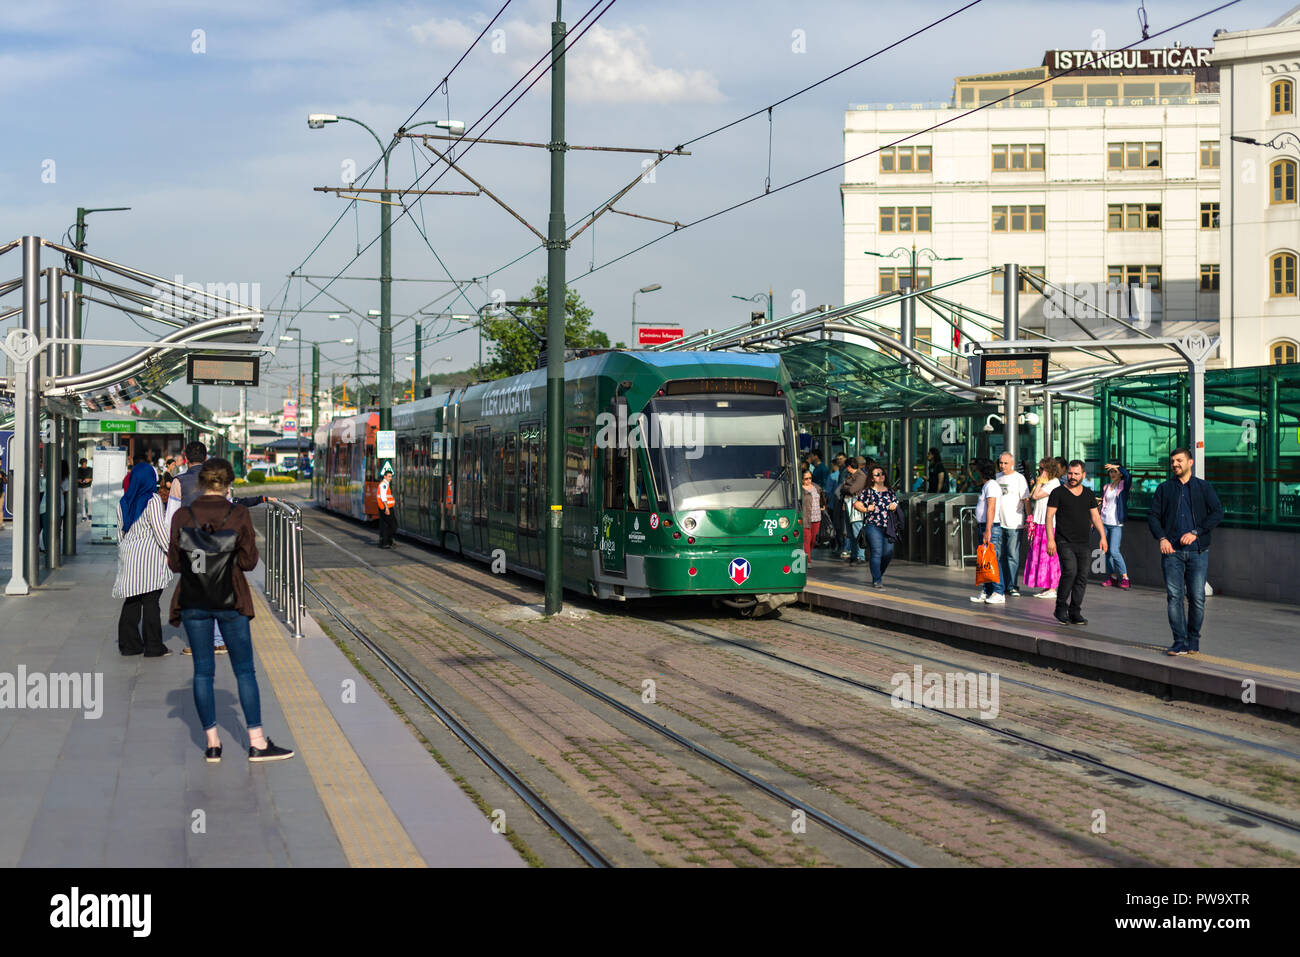 Un tram arrive à la station de tramway T1 d'Eminönü avec des gens debout sur la plate-forme, Istanbul, Turquie Banque D'Images